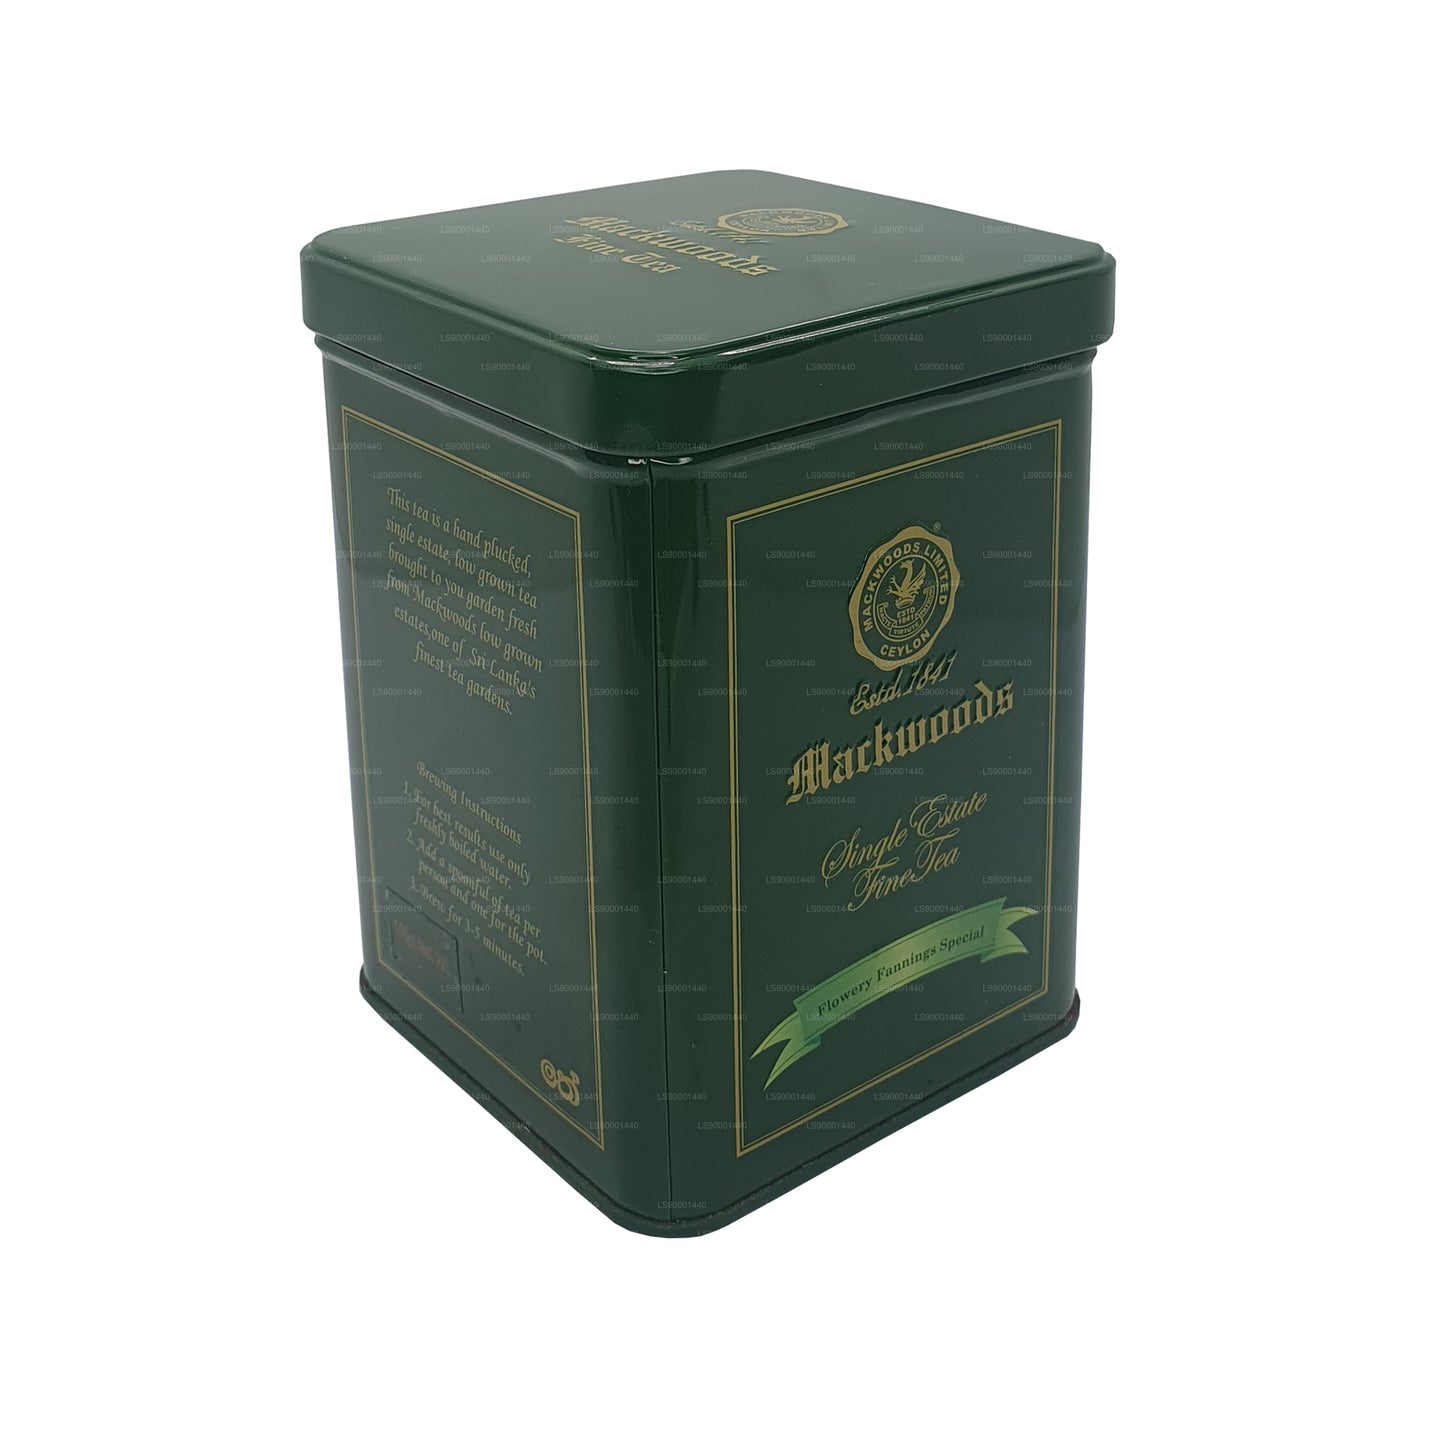 Speciální čaj Mackwoods Single Estate Fannery Fannings (FFsp) (100 g)